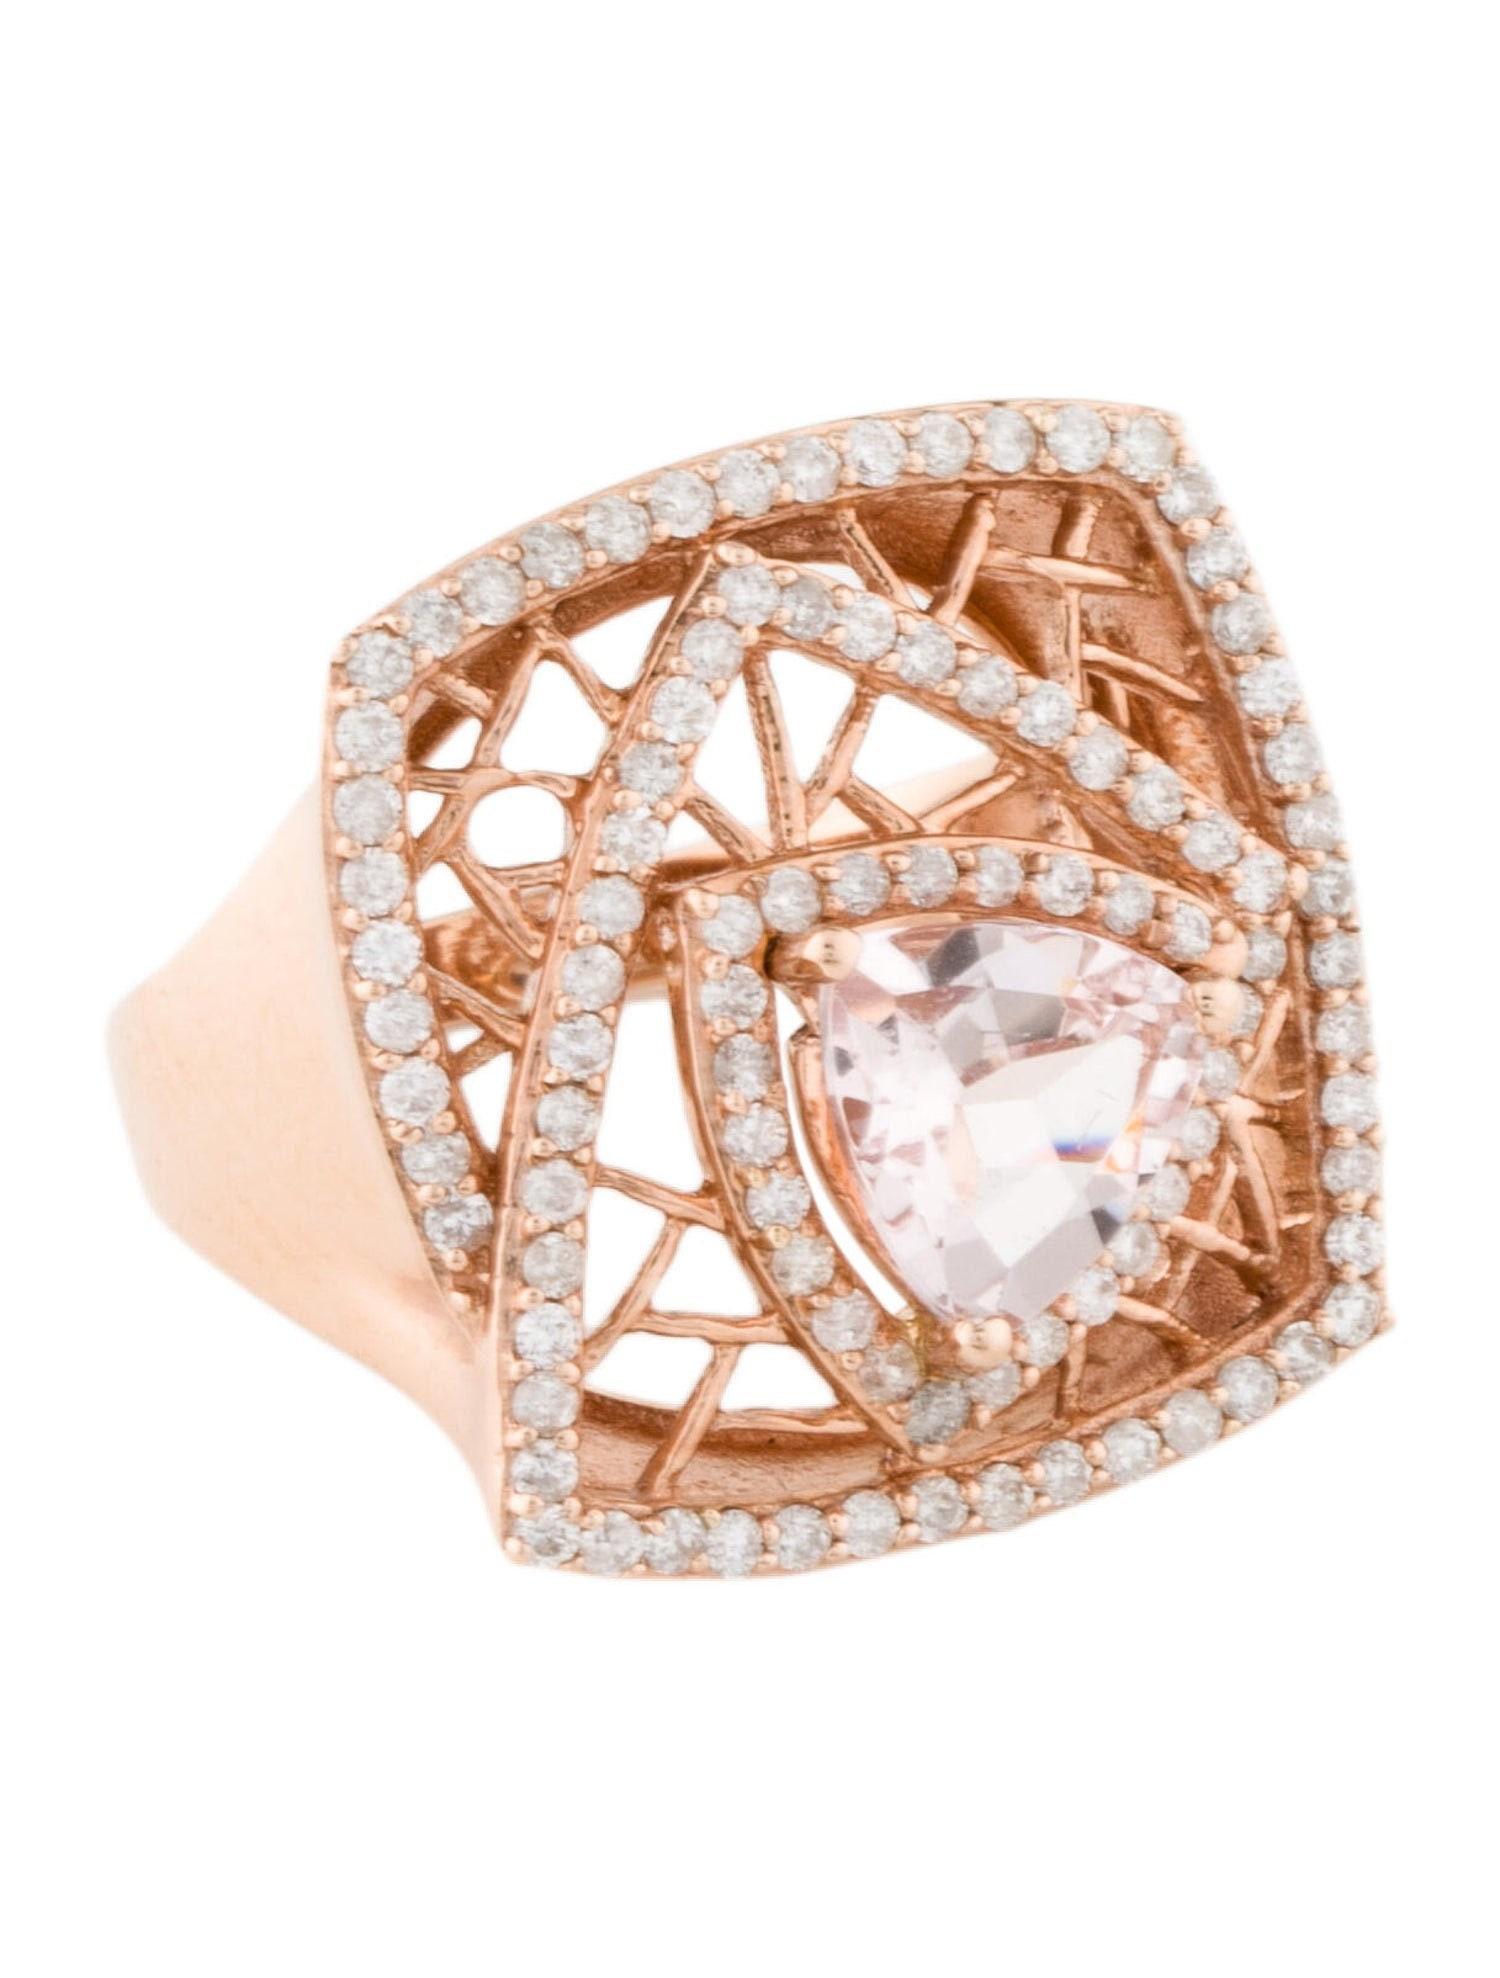 Dies ist eine wunderschöne natürliche 1,31 Karat Morganit und Diamant Vintage-Ring in massivem 14K Roségold gesetzt. Der natürliche Morganit im Billionenschliff hat eine ausgezeichnete pfirsichfarbene Farbe und ist von einem Halo aus weißen